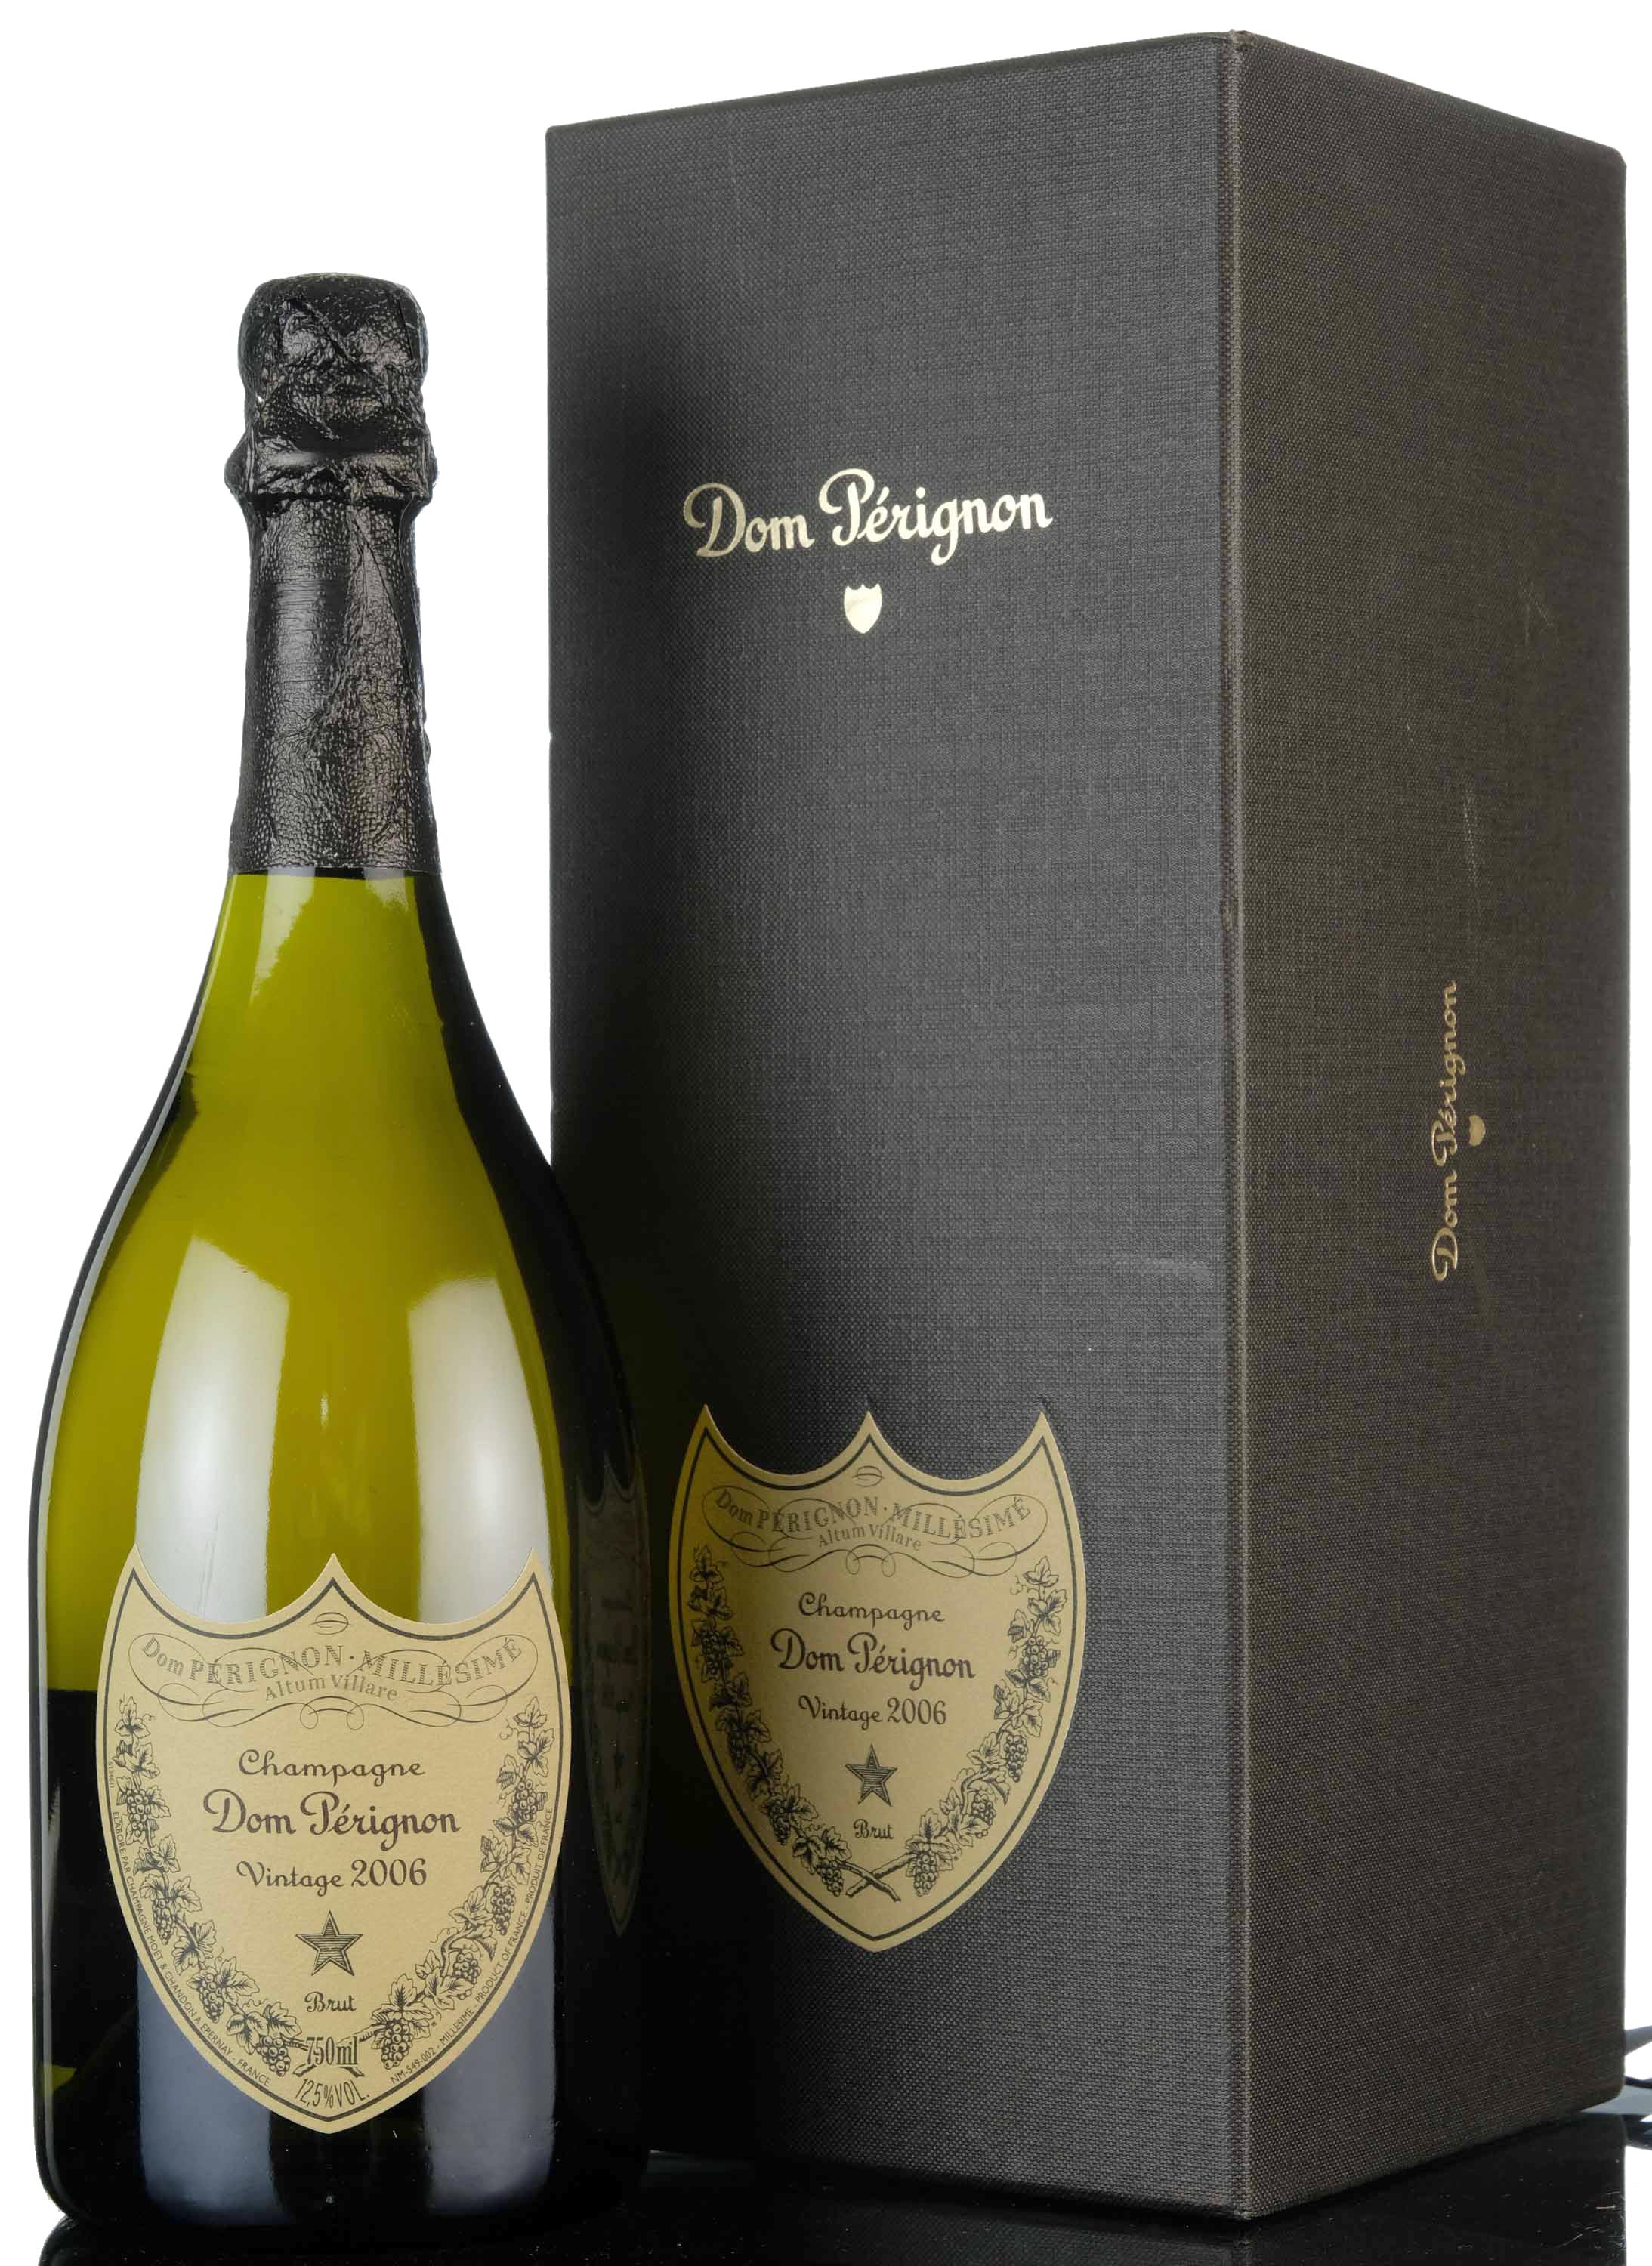 Moet & Chandon Dom Perignon 2006 Vintage Champagne